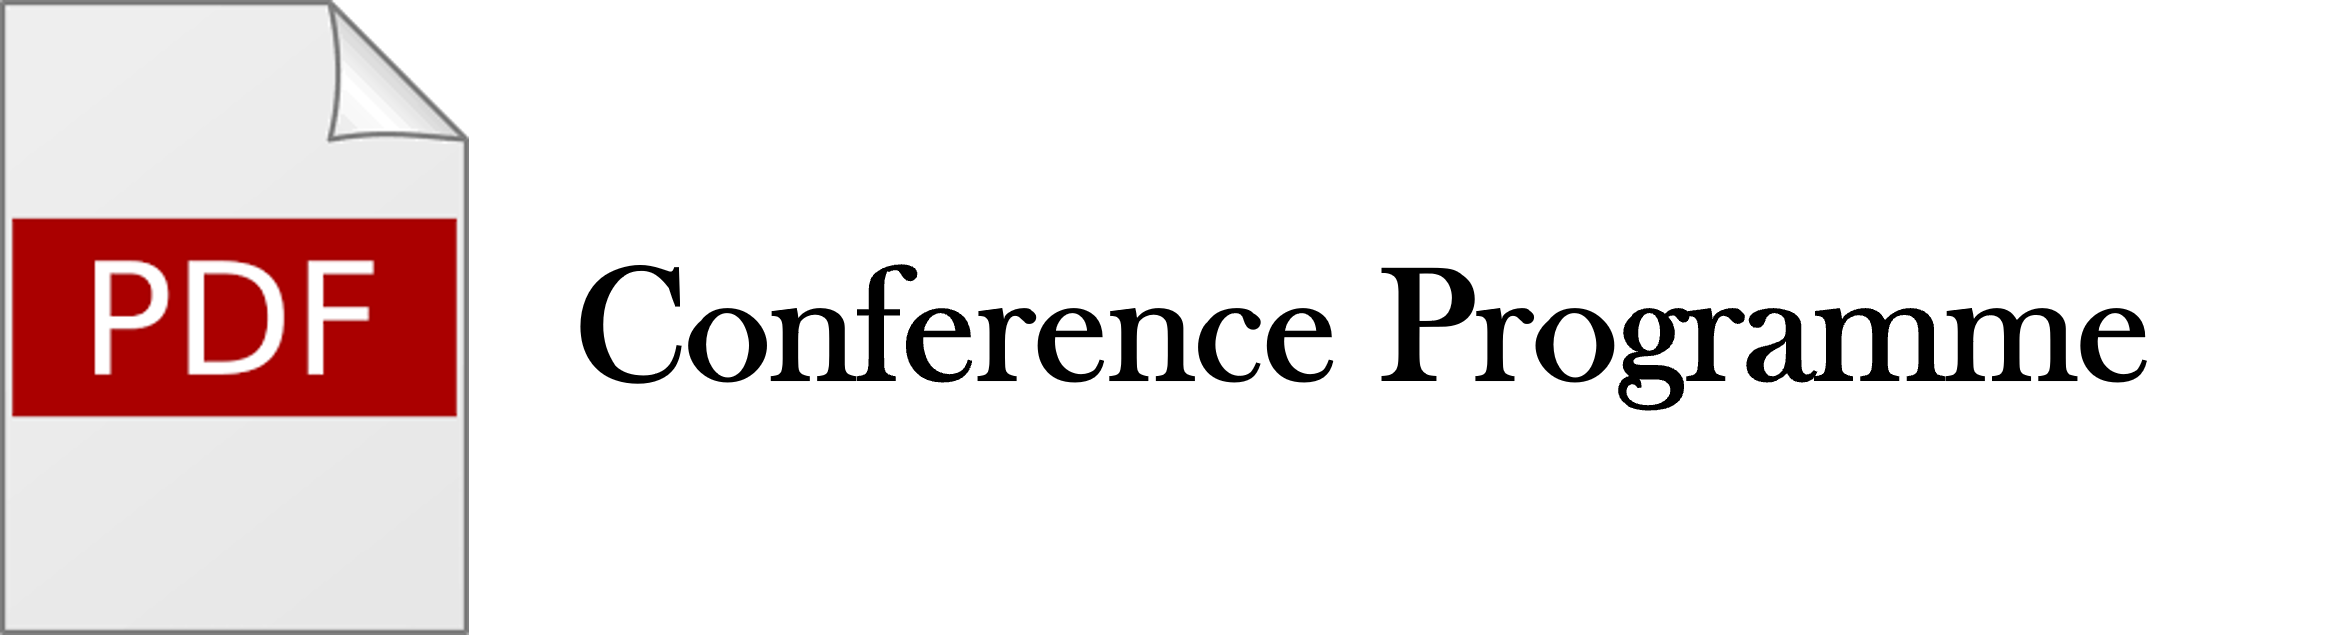 logo of pdf